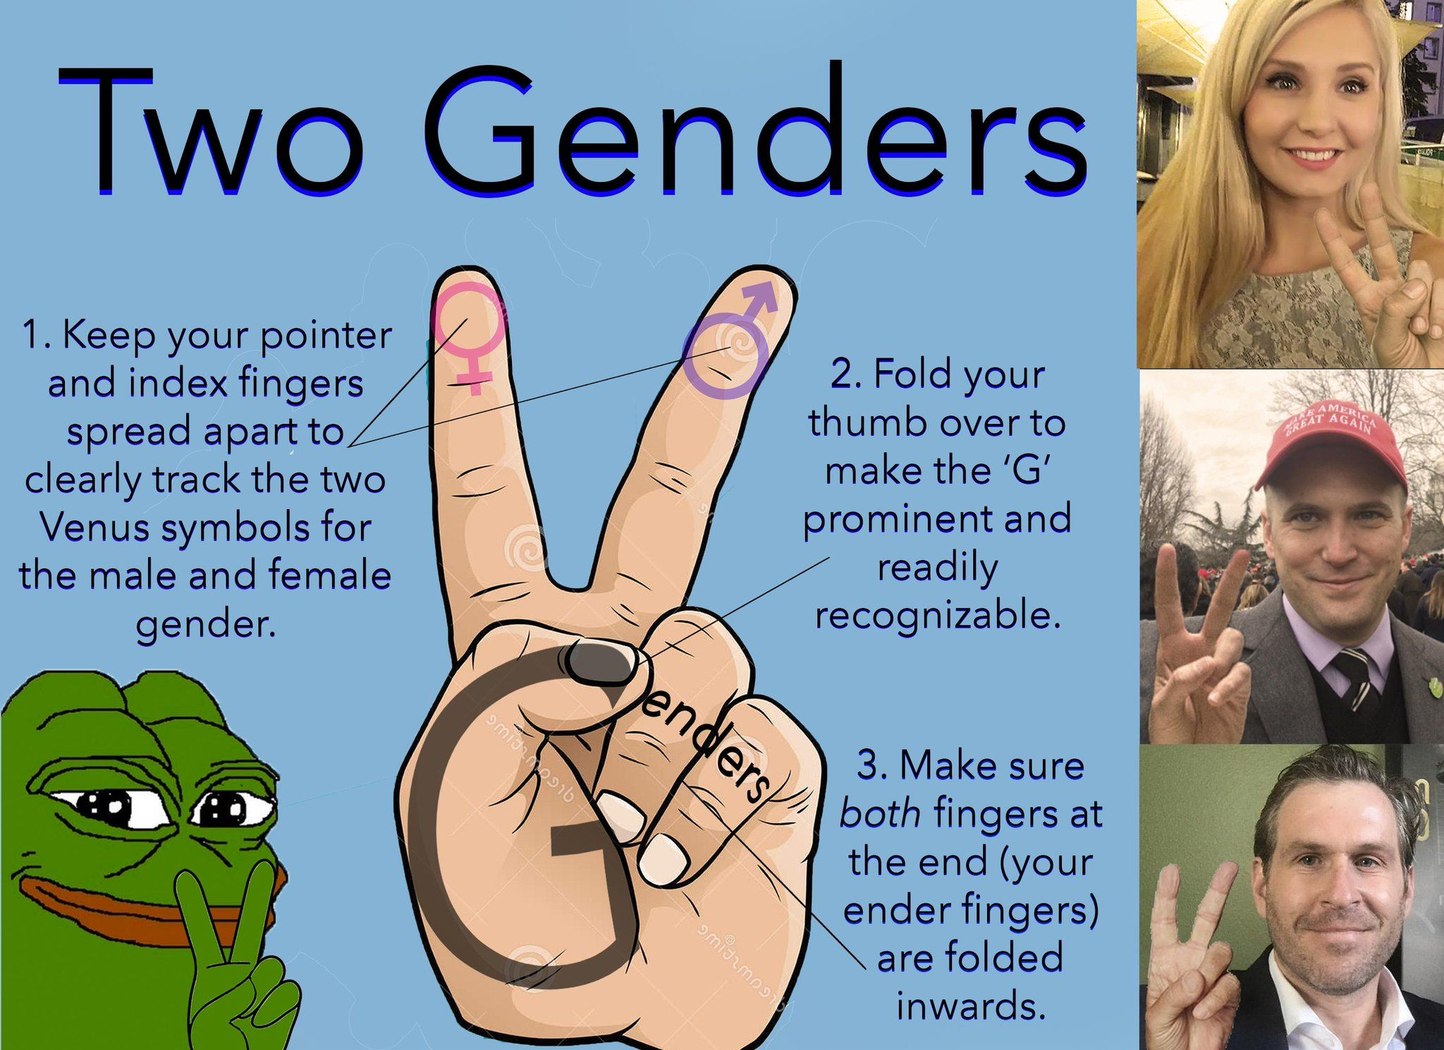 G for gender! - meme.